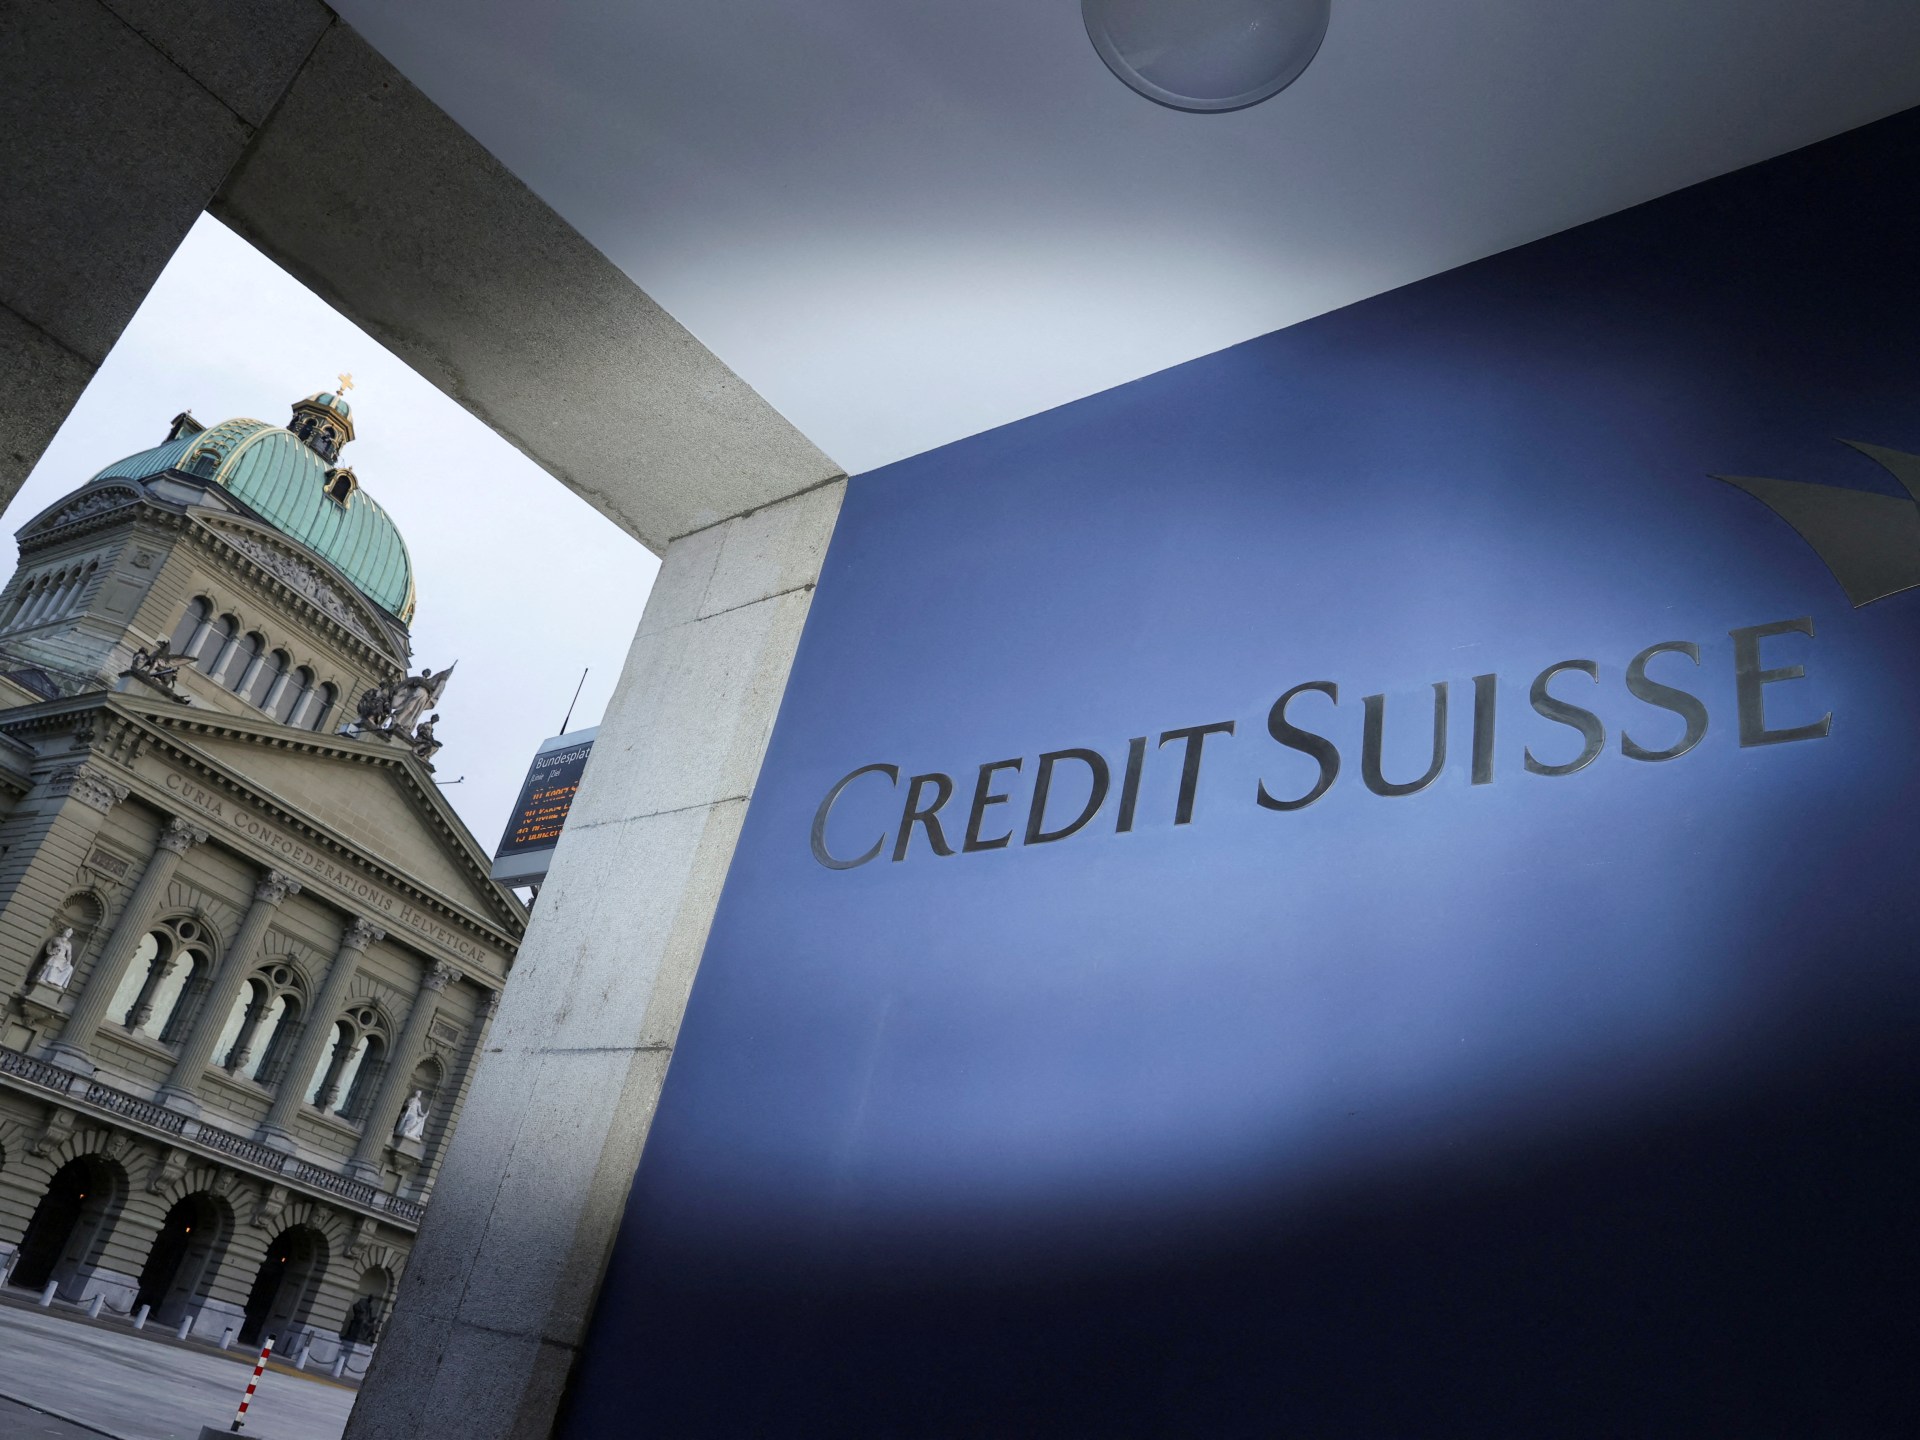 US mengatakan Credit Suisse melanggar kesepakatan tentang penggelapan pajak klien kaya |  Berita Bisnis dan Ekonomi